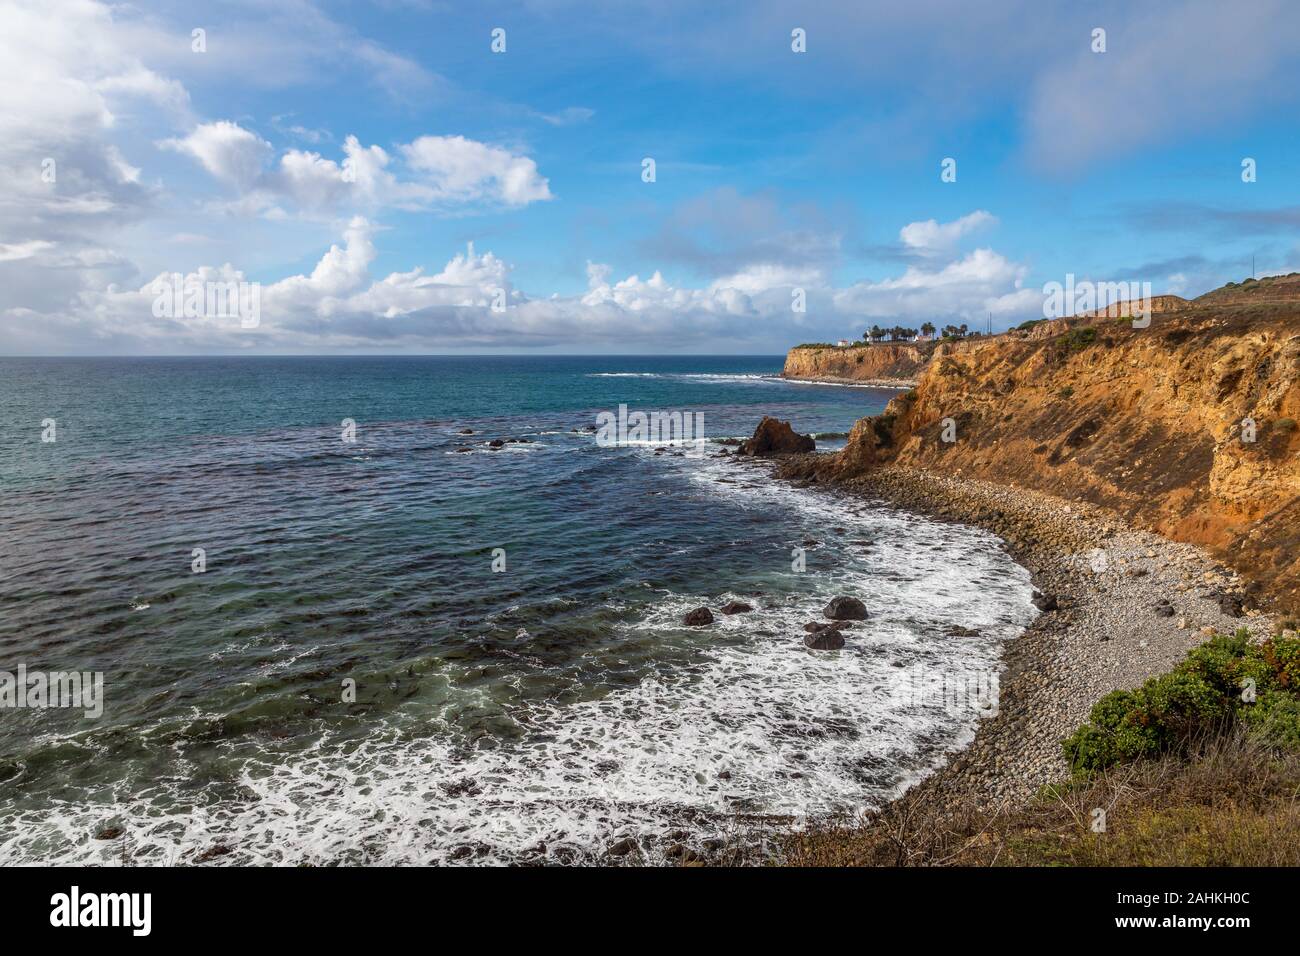 Vue côtière de Pelican Cove avec des vagues se briser sur le rivage rocheux et beau ciel bleu, piste de Terranea, Rancho Palos Verdes, California Banque D'Images